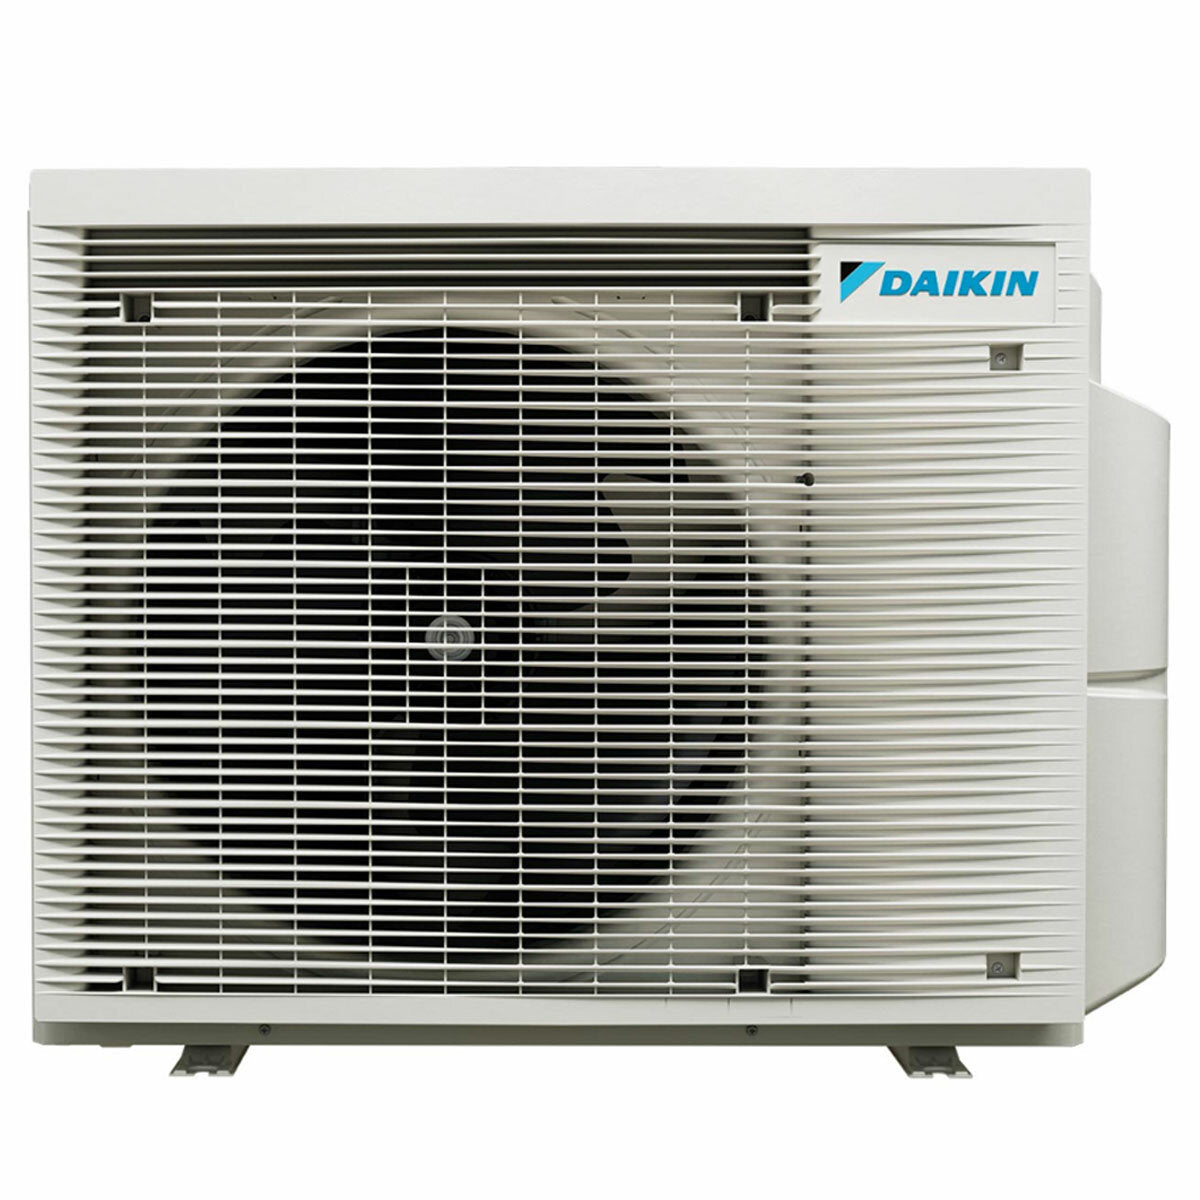 Daikin Emura 3 trial split air conditioner 7000+9000+18000 BTU inverter A+ wifi outdoor unit 6.8 kW Silver